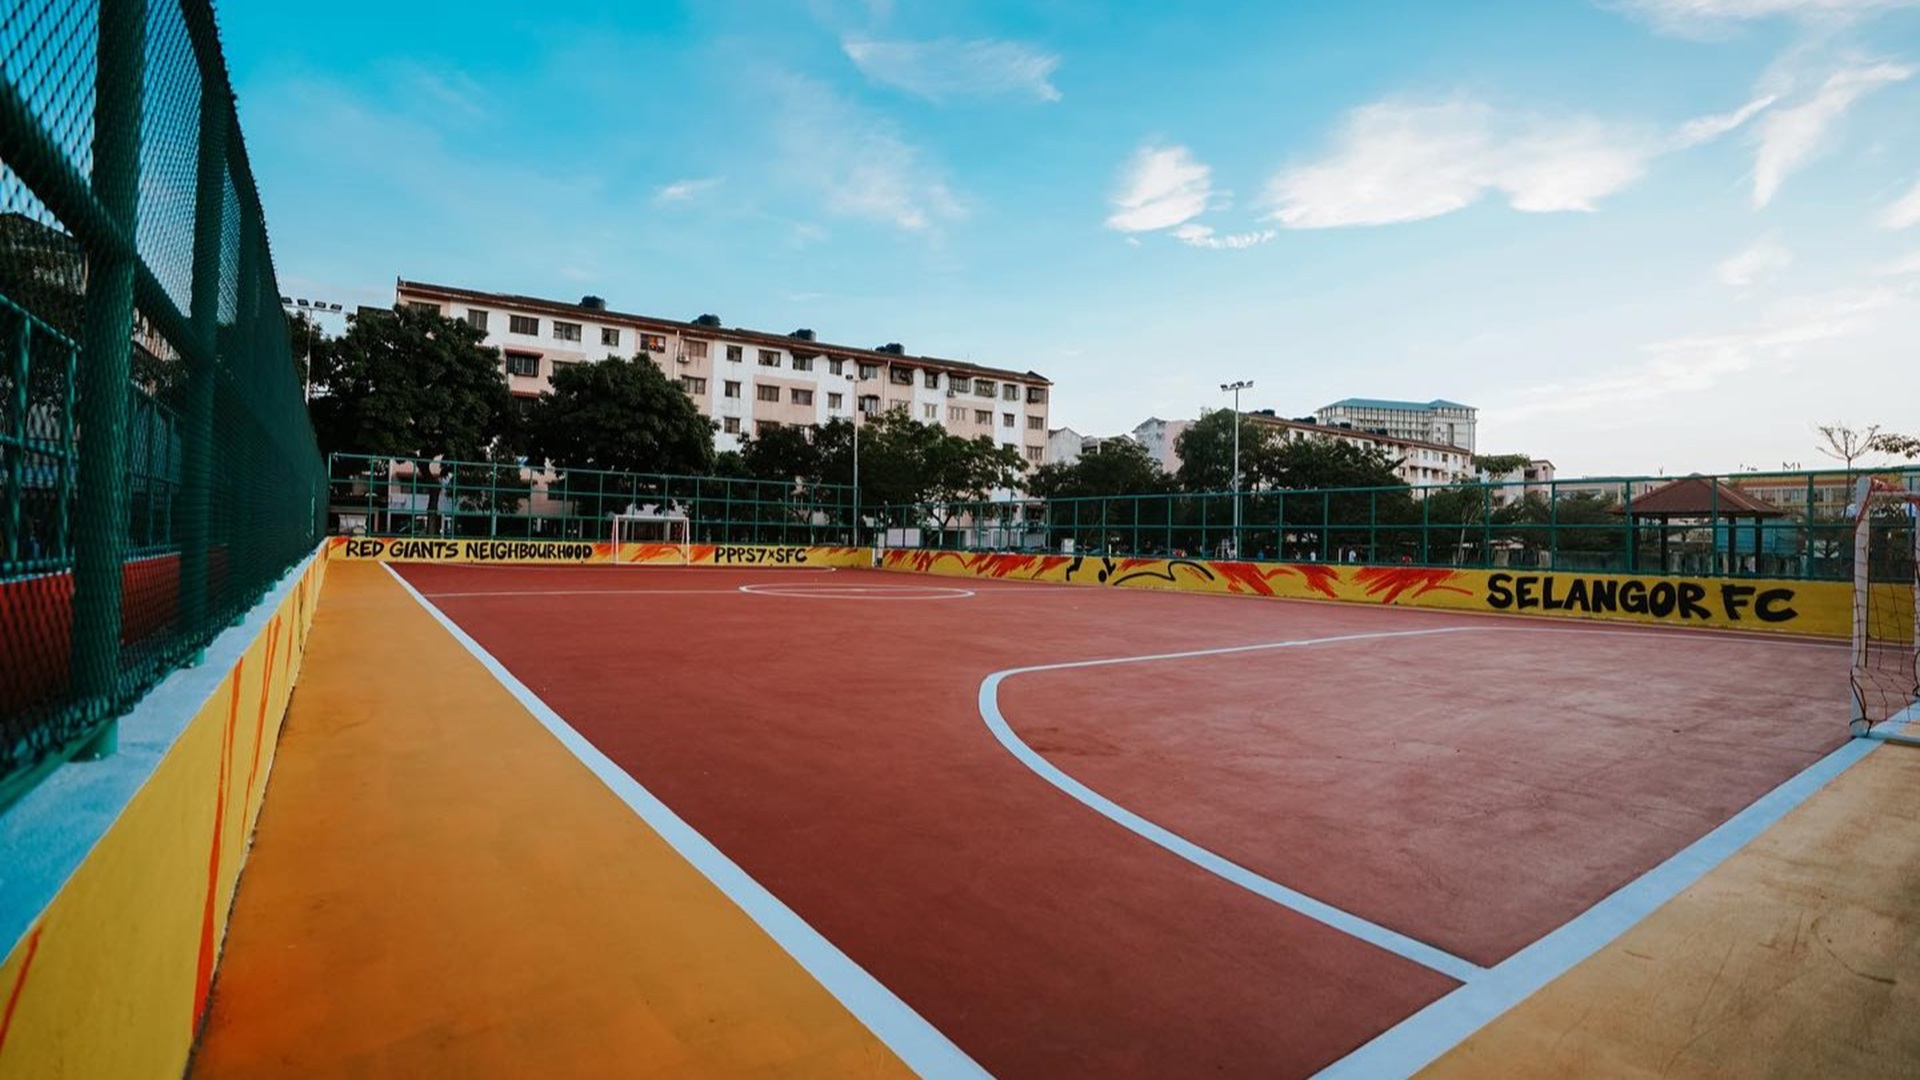 Selangor Bantu Pulihkan Gelanggang Futsal, Pastikan Penduduk Selamat Bermain